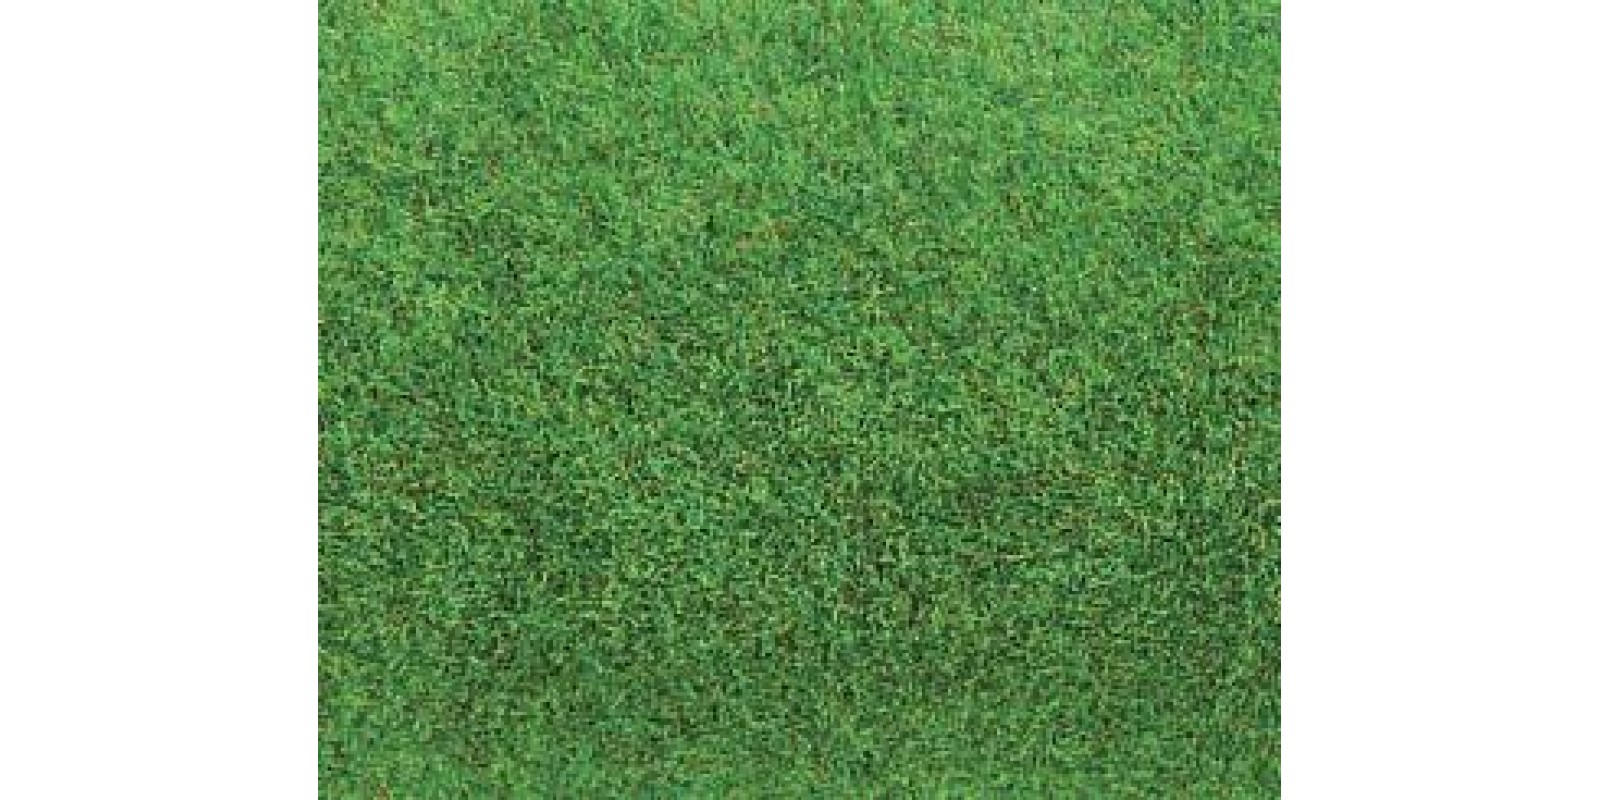 FA180755	 Ground mat, light green